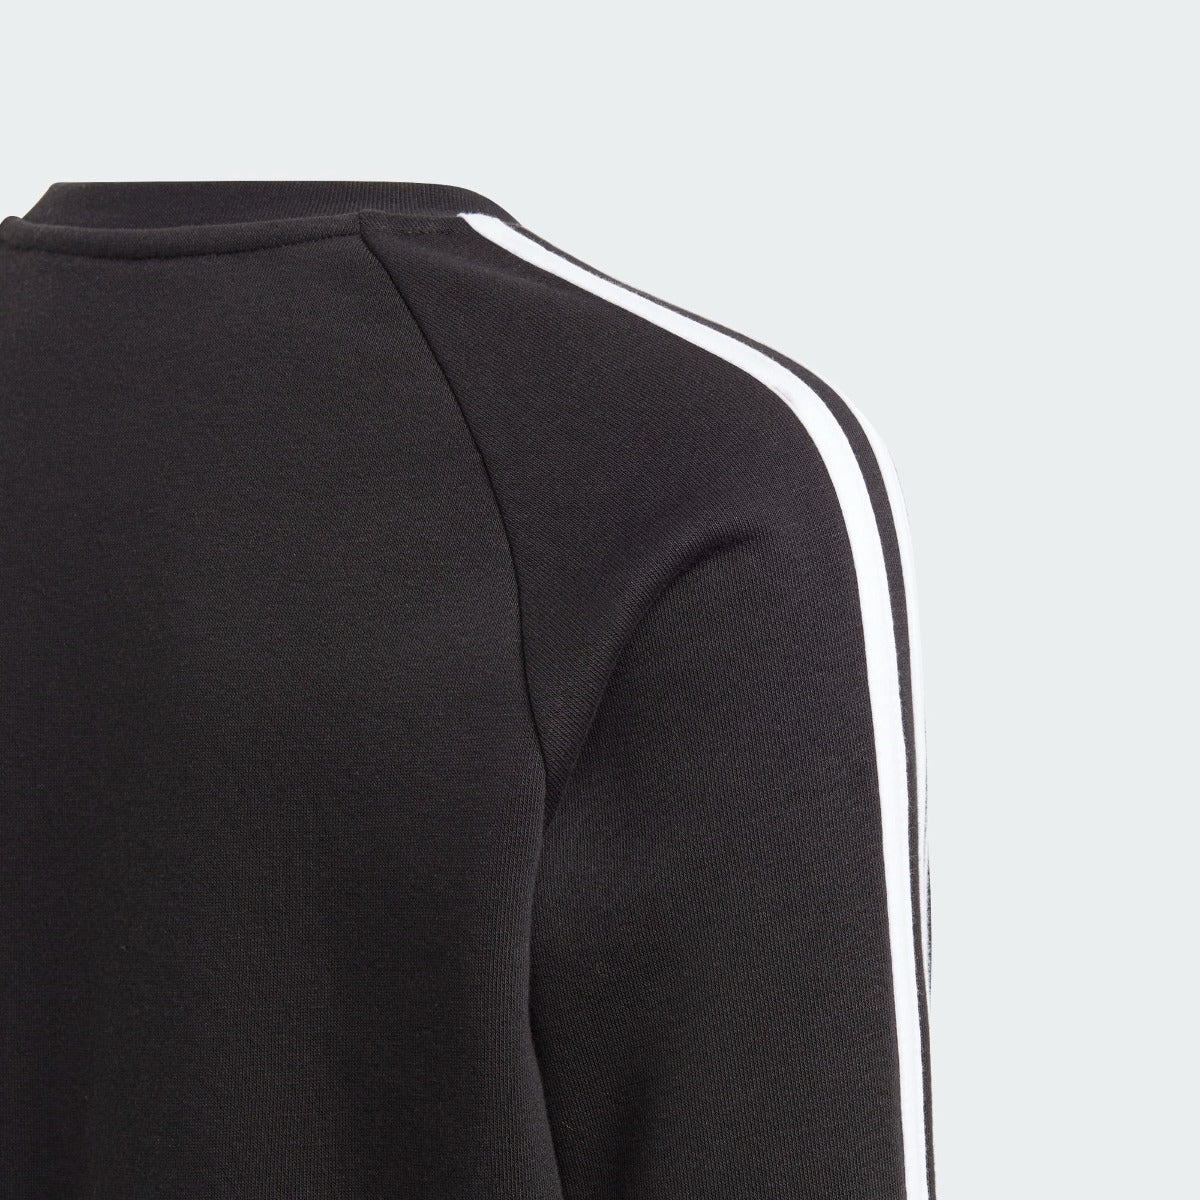 Adidas 2020-21 Juventus Youth Crewneck Sweater - Black-Orange